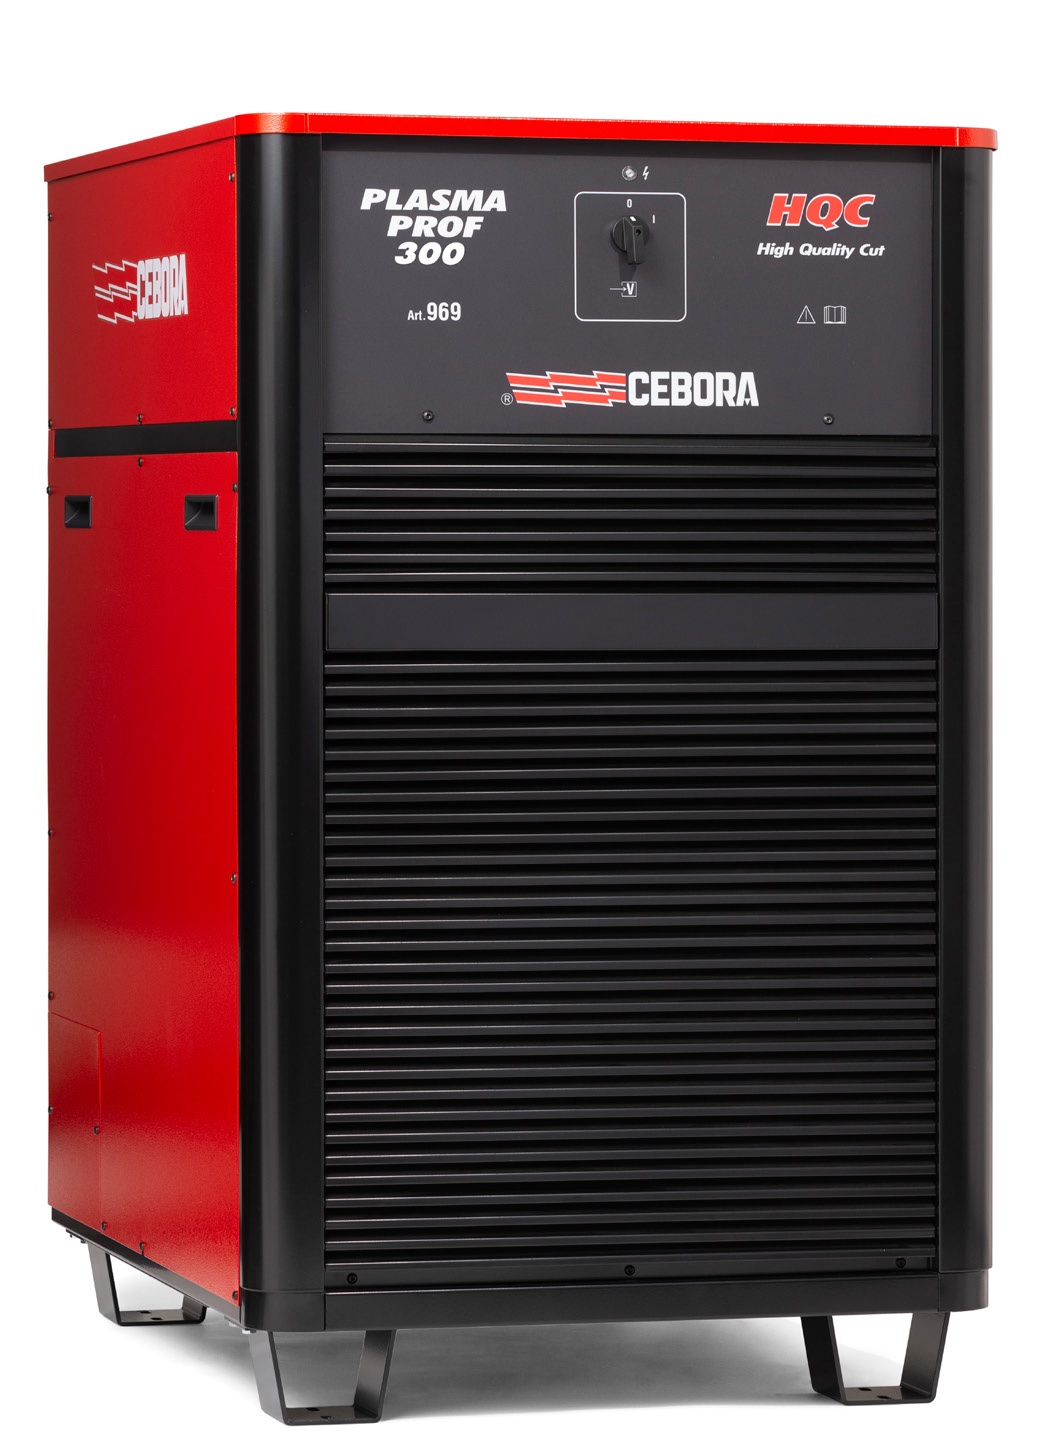 Аппарат плазменной резки Cebora PLASMA PROF 300 HQC + полный комплект для РОБОТА с ручной консолью